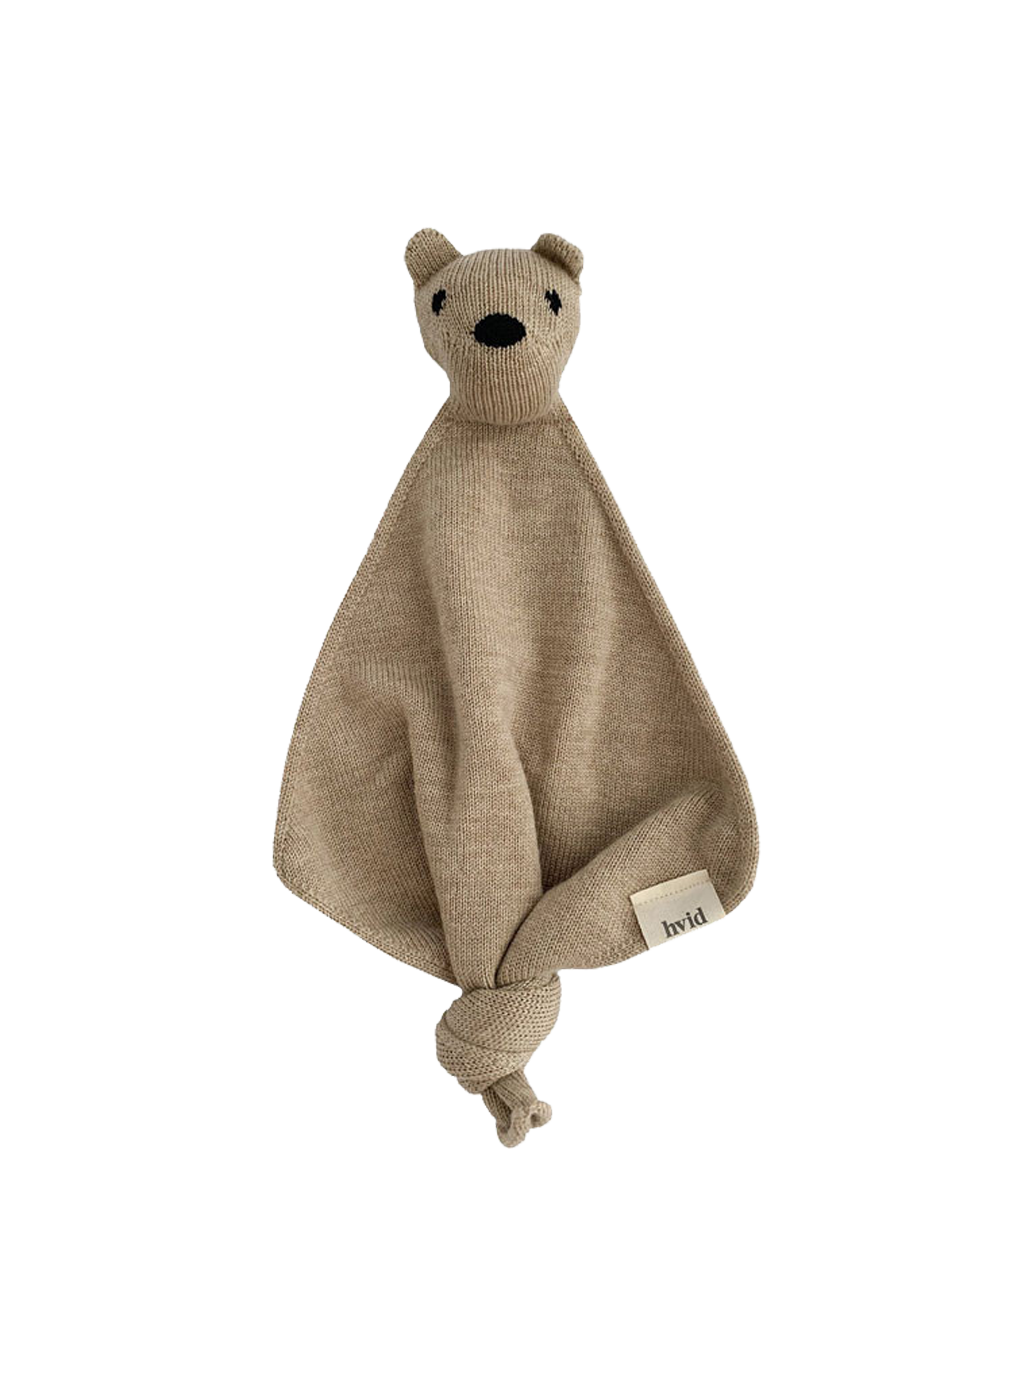 merino cuddly toy Tokki's bear